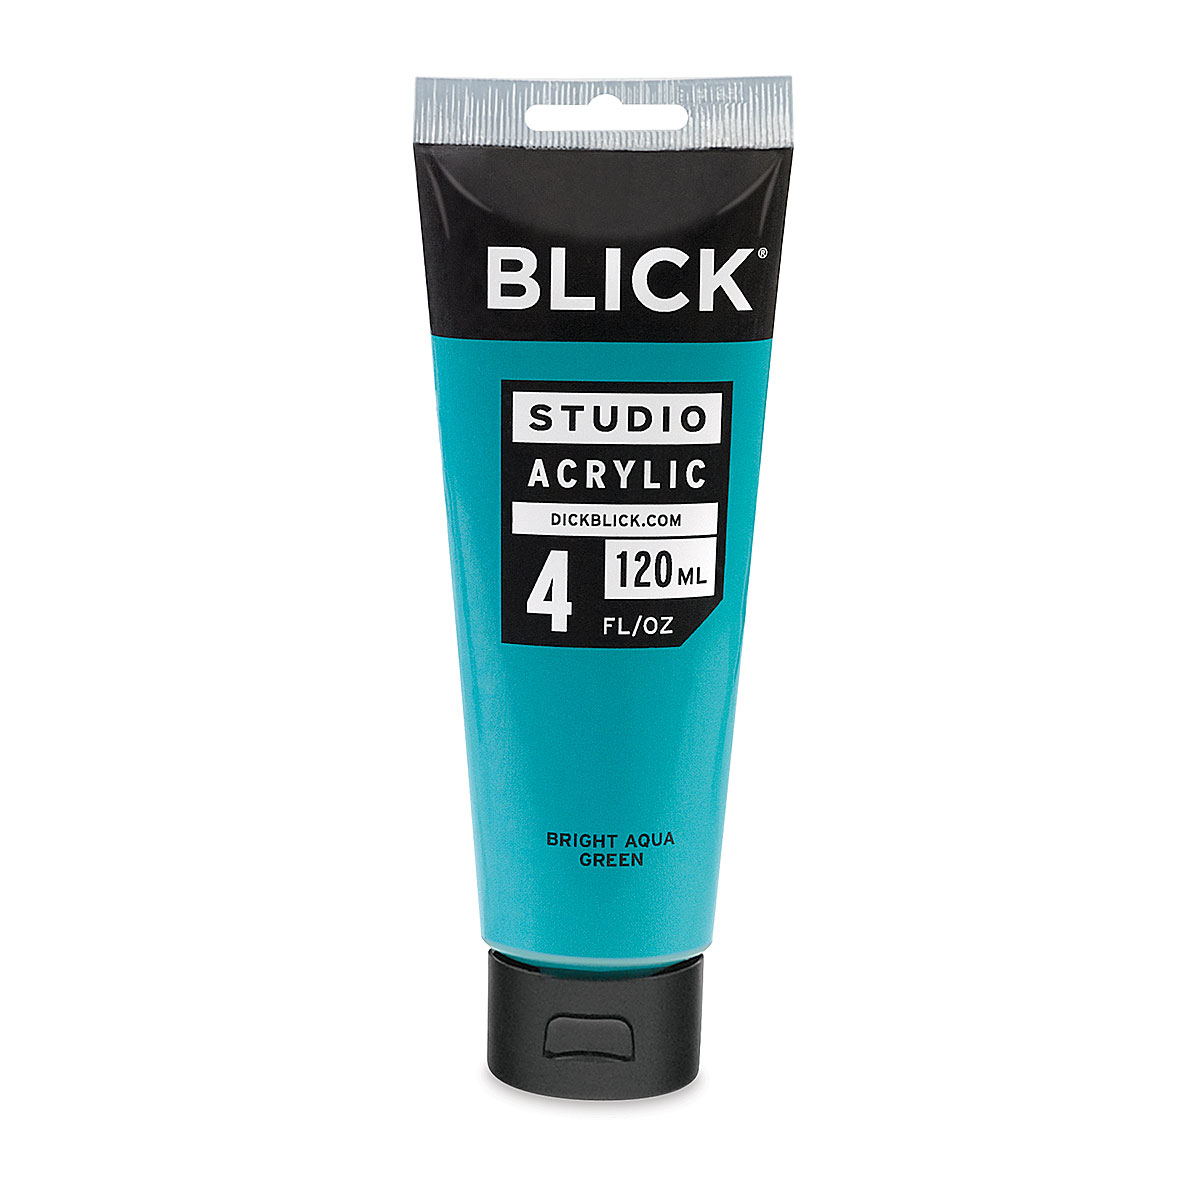 Blick Studio Acrylics - Bright Aqua Green, 4 oz tube